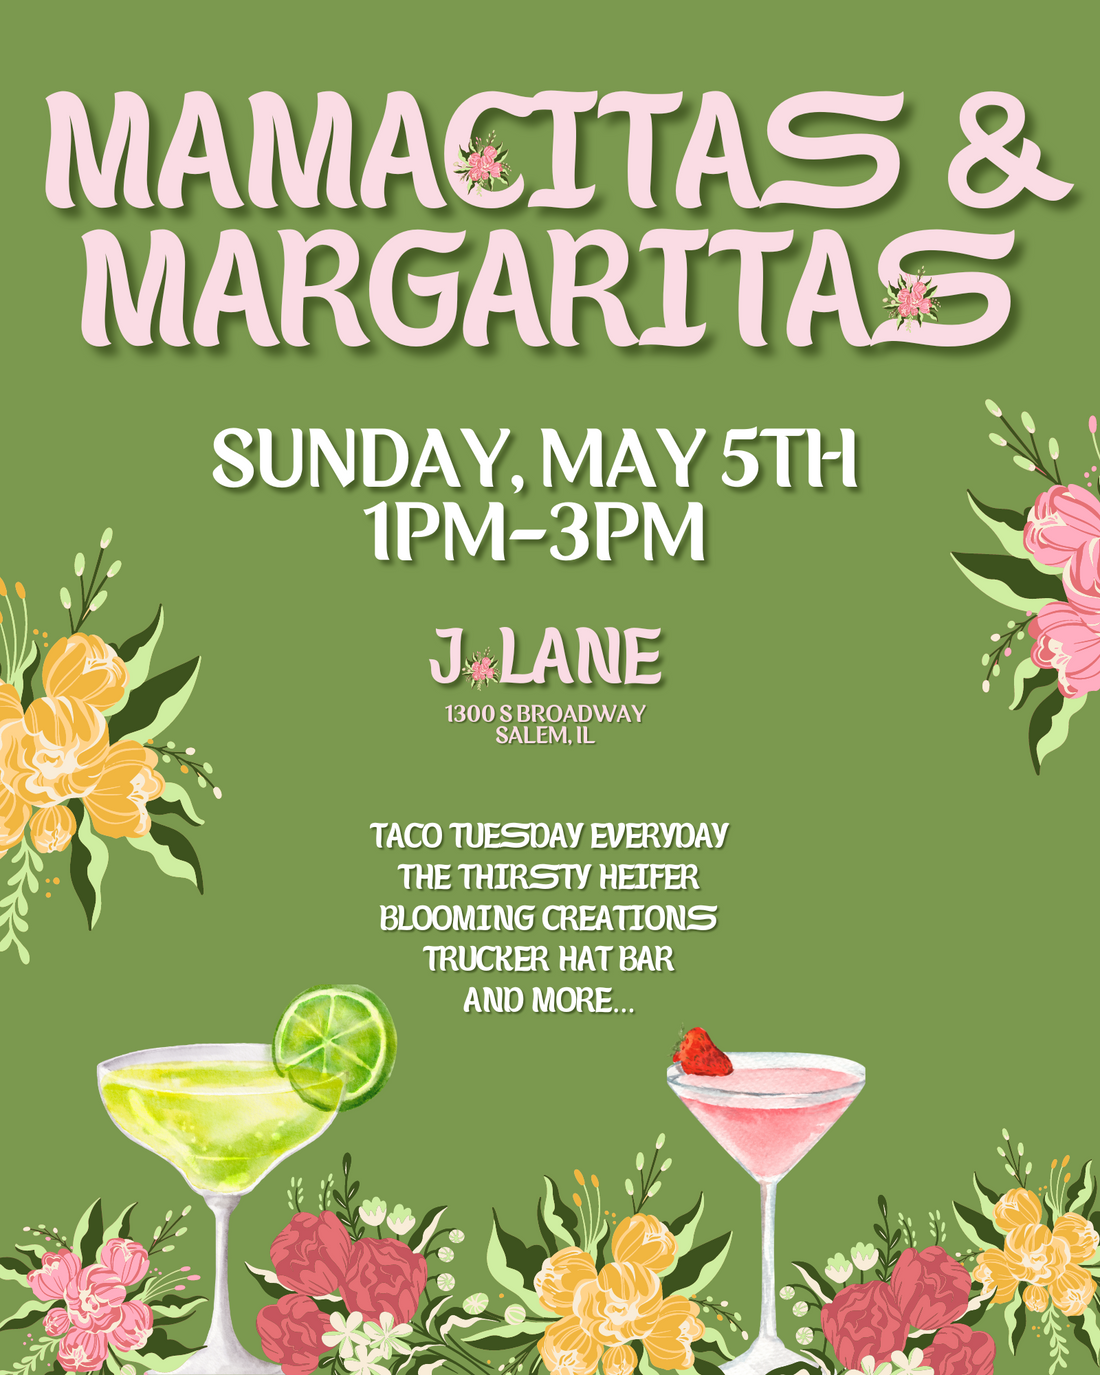 Mamacitas & Margaritas Event